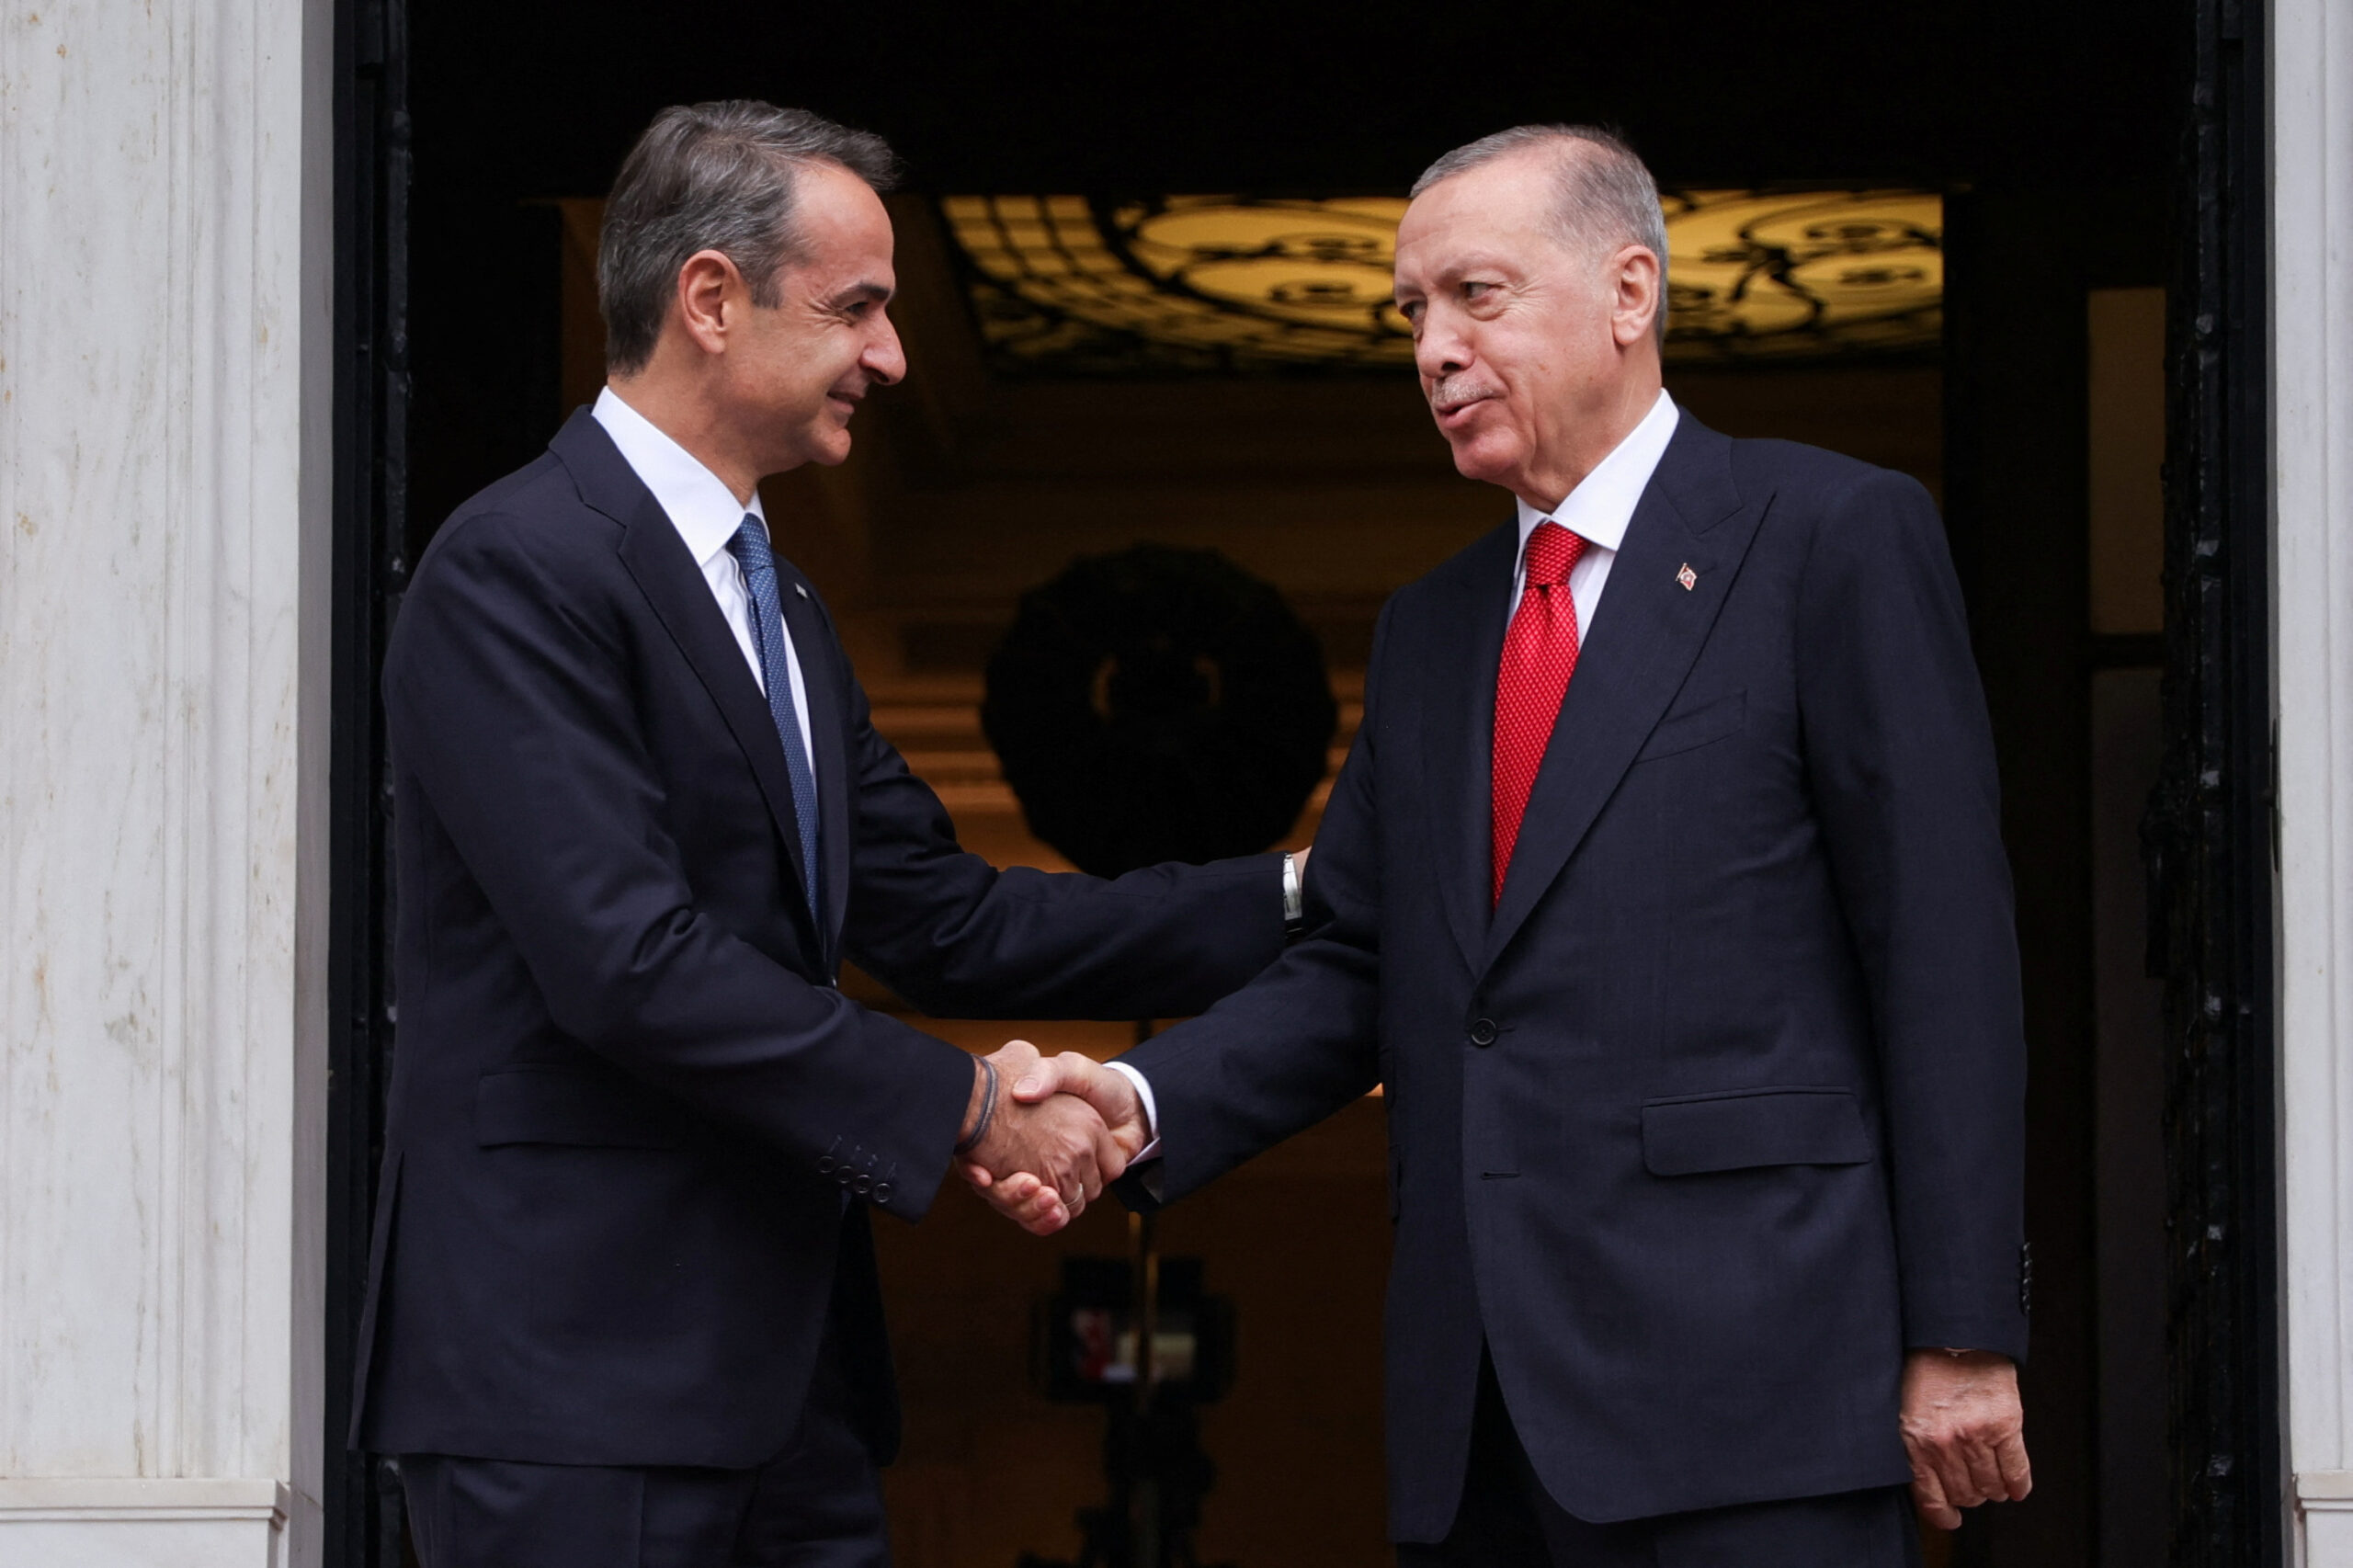 Nesër Mitsotakis në Turqi! Erdogan: S’jemi për konflikte, rëndësi ka fqinjësia e mirë!